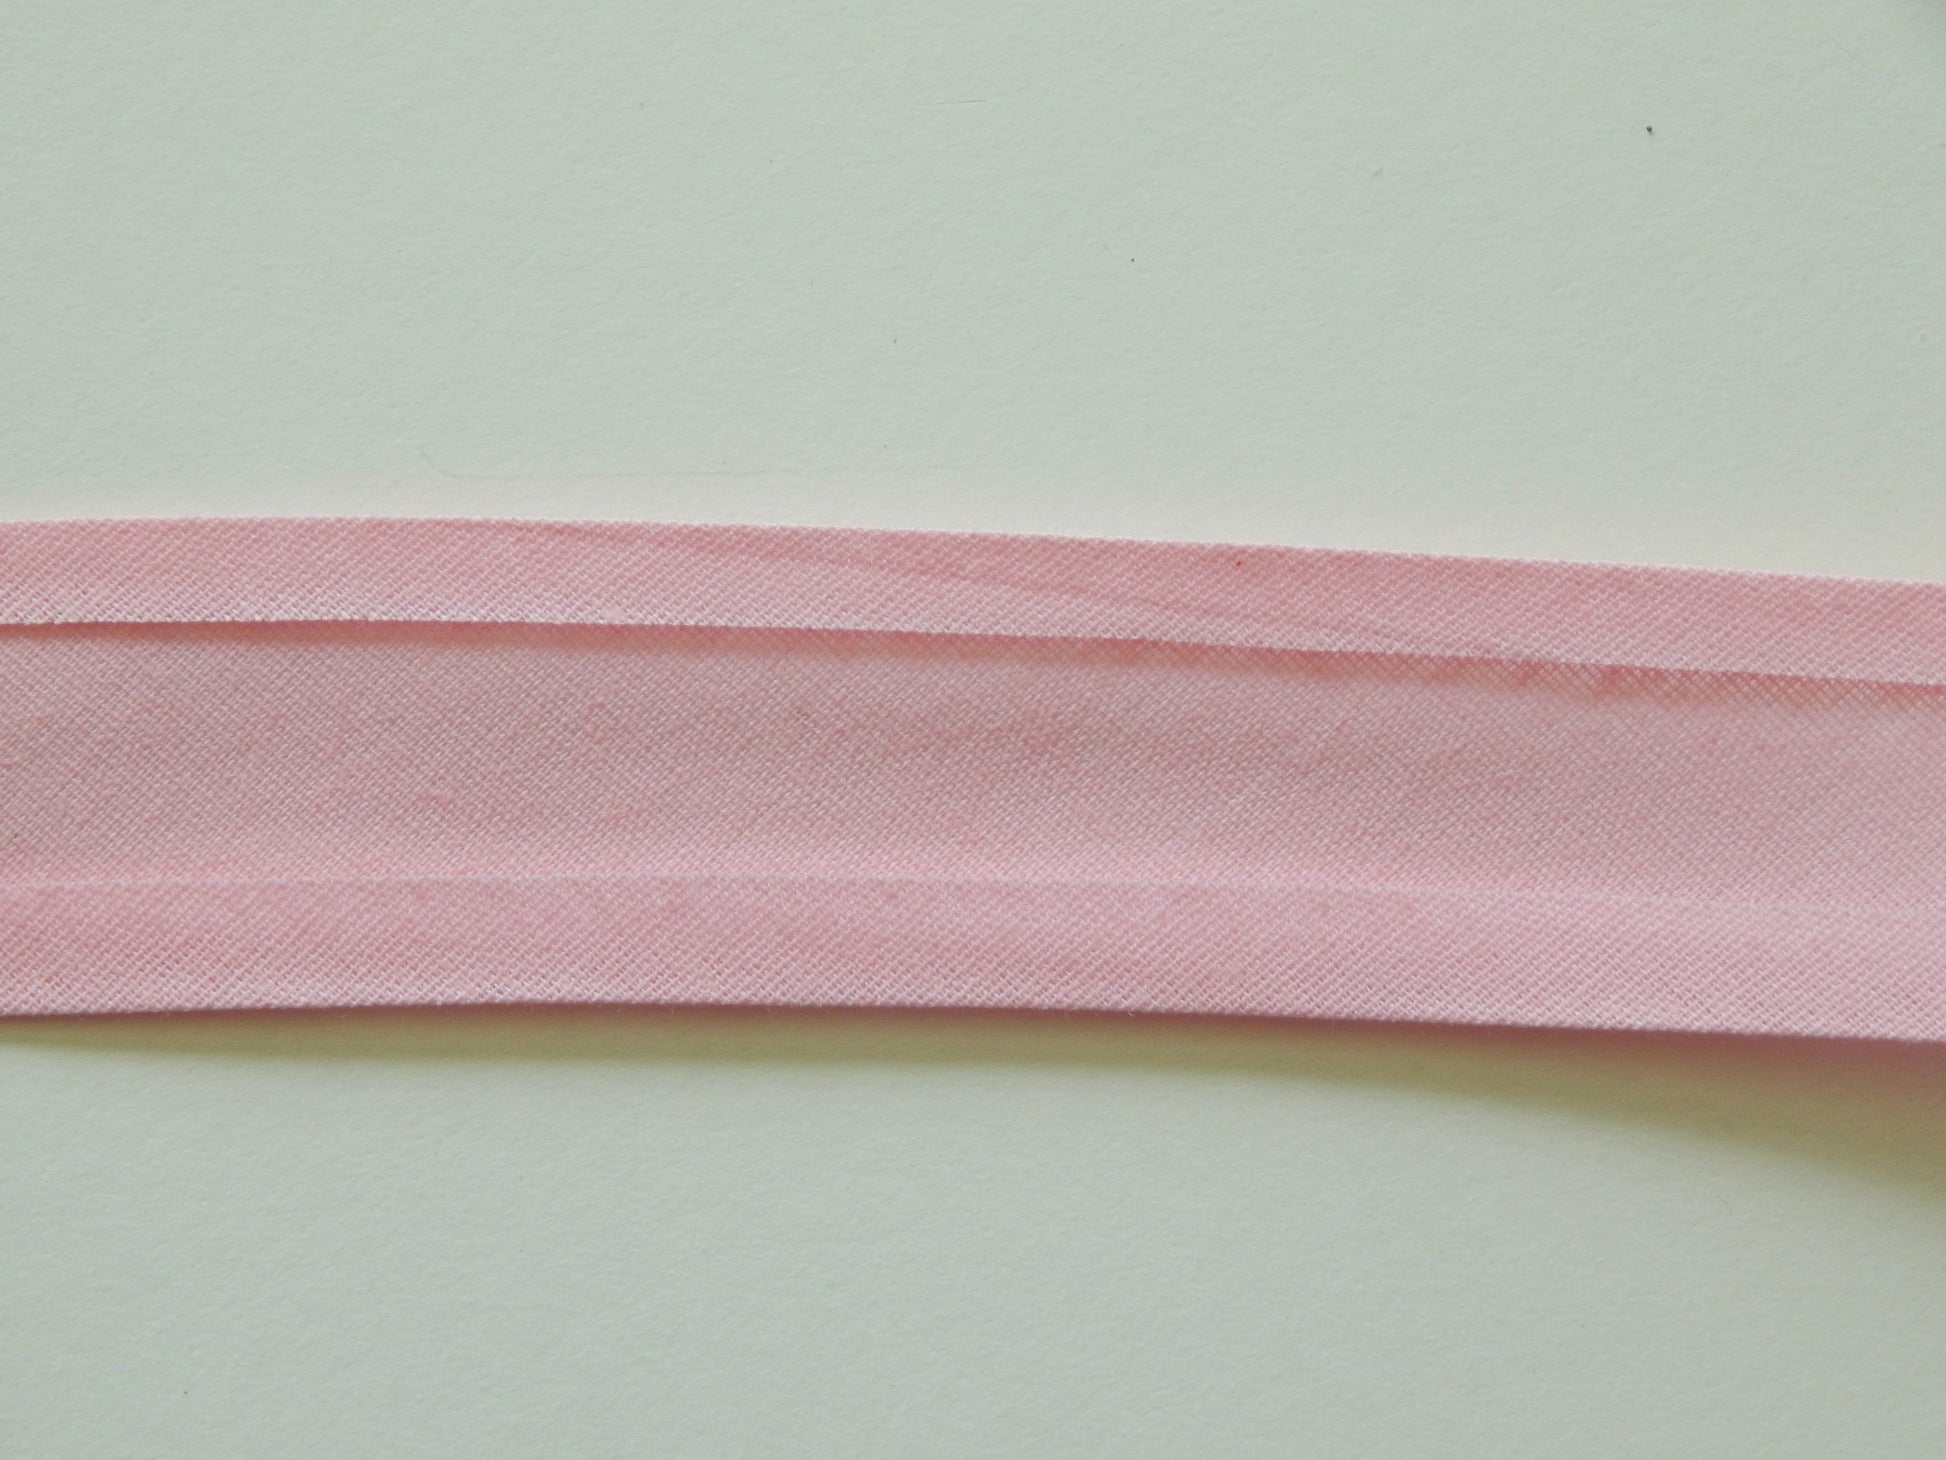 light pink bias binding